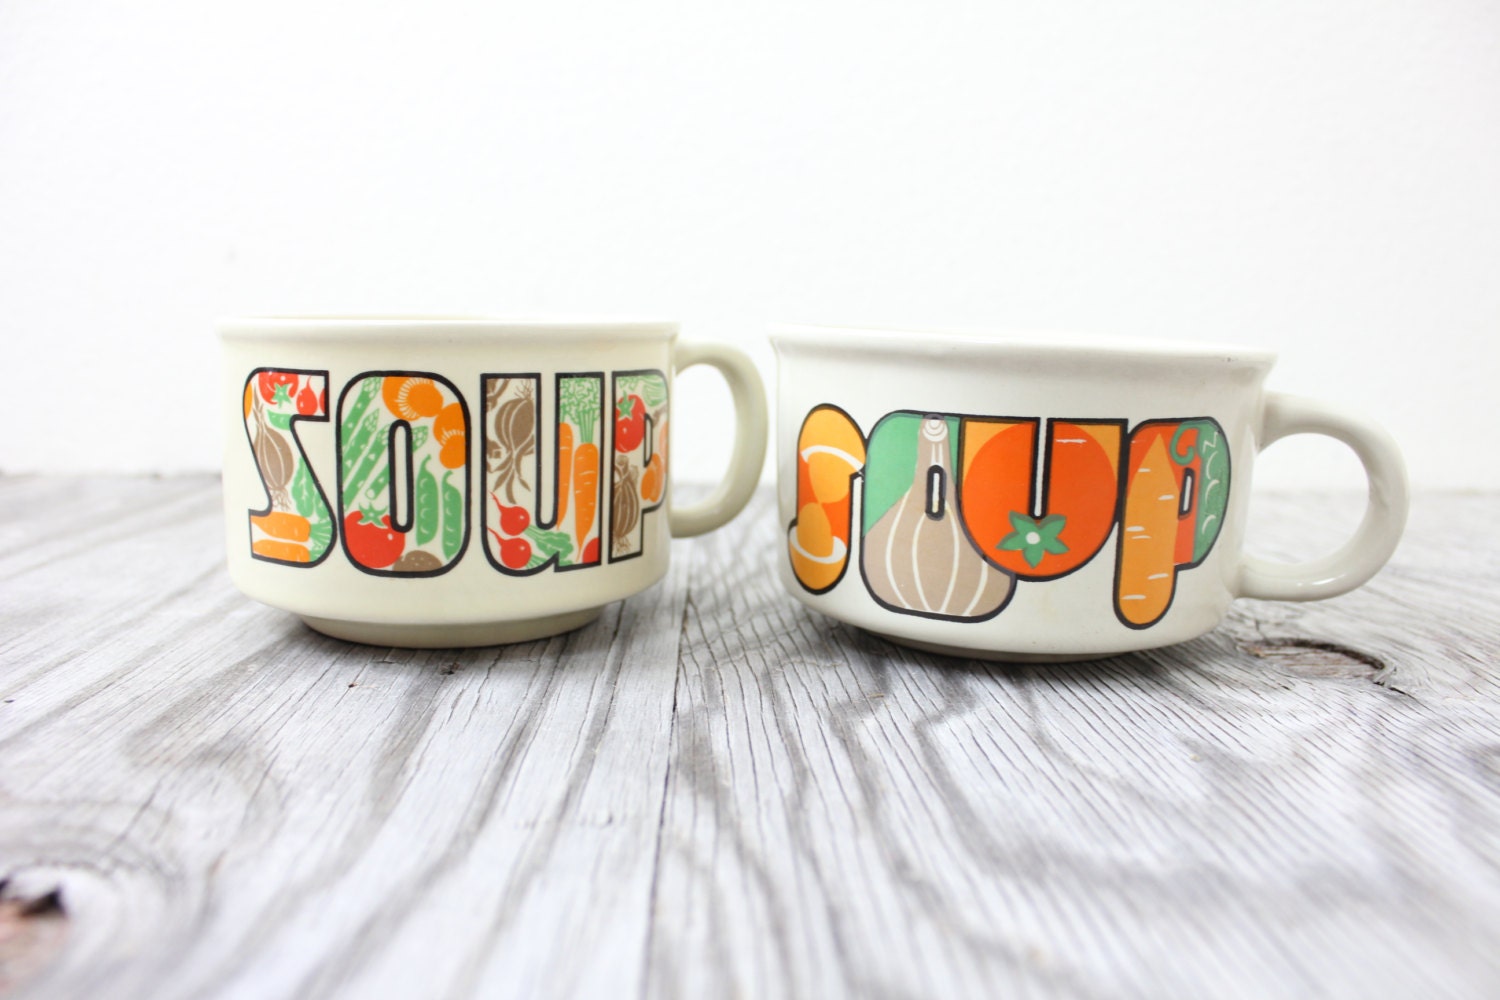 Vintage Retro "SOUP" Mugs - VintageWestCoast